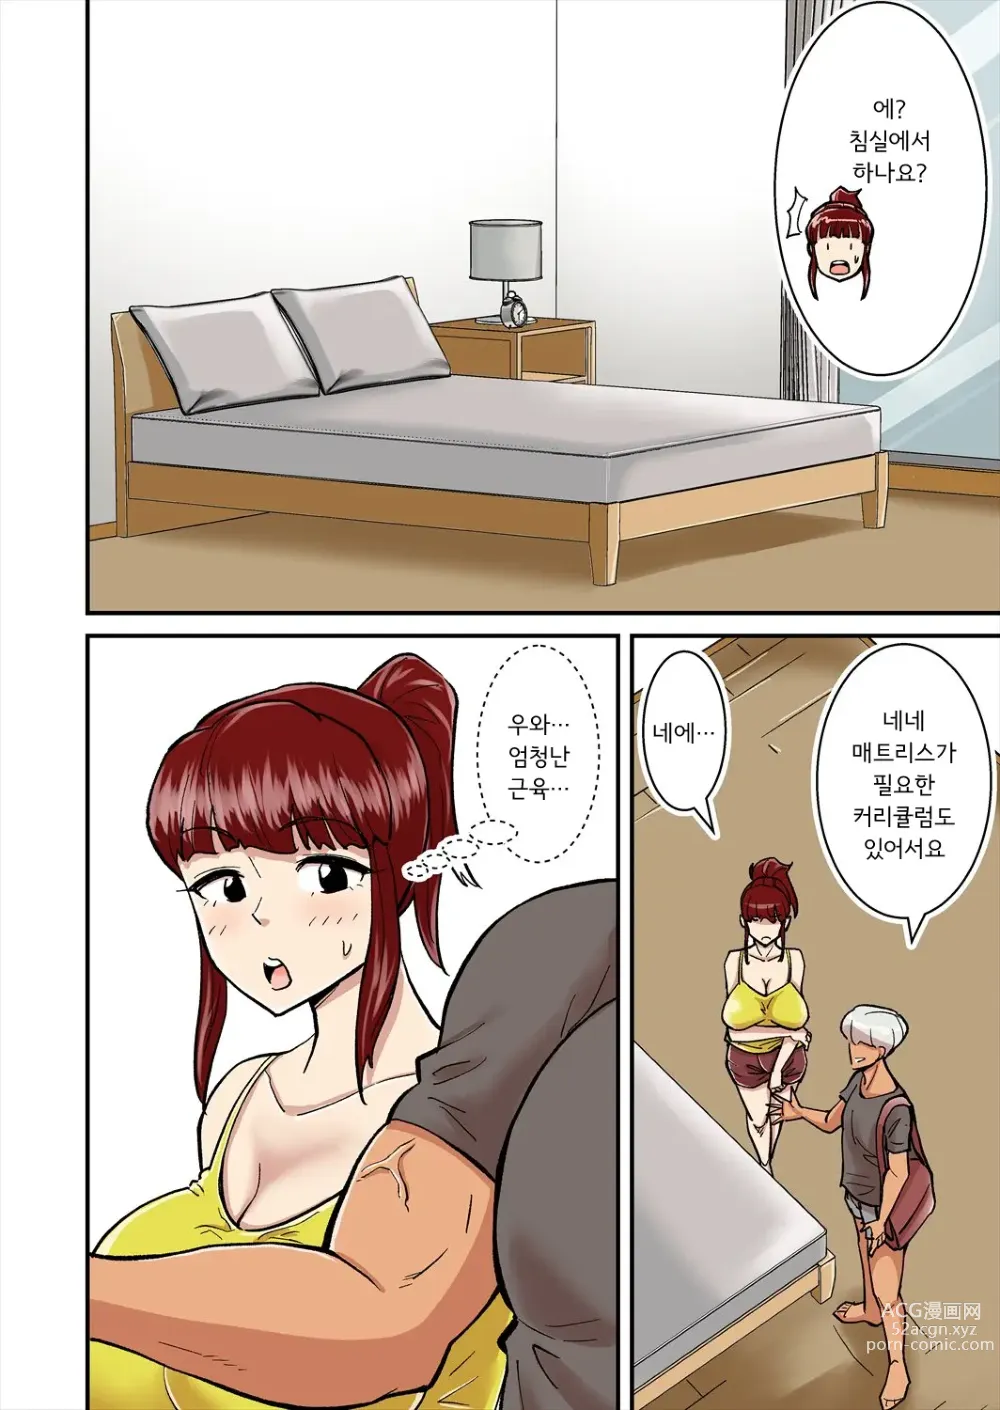 Page 5 of doujinshi 엄마는 DQN에게 돌림빵 당한다